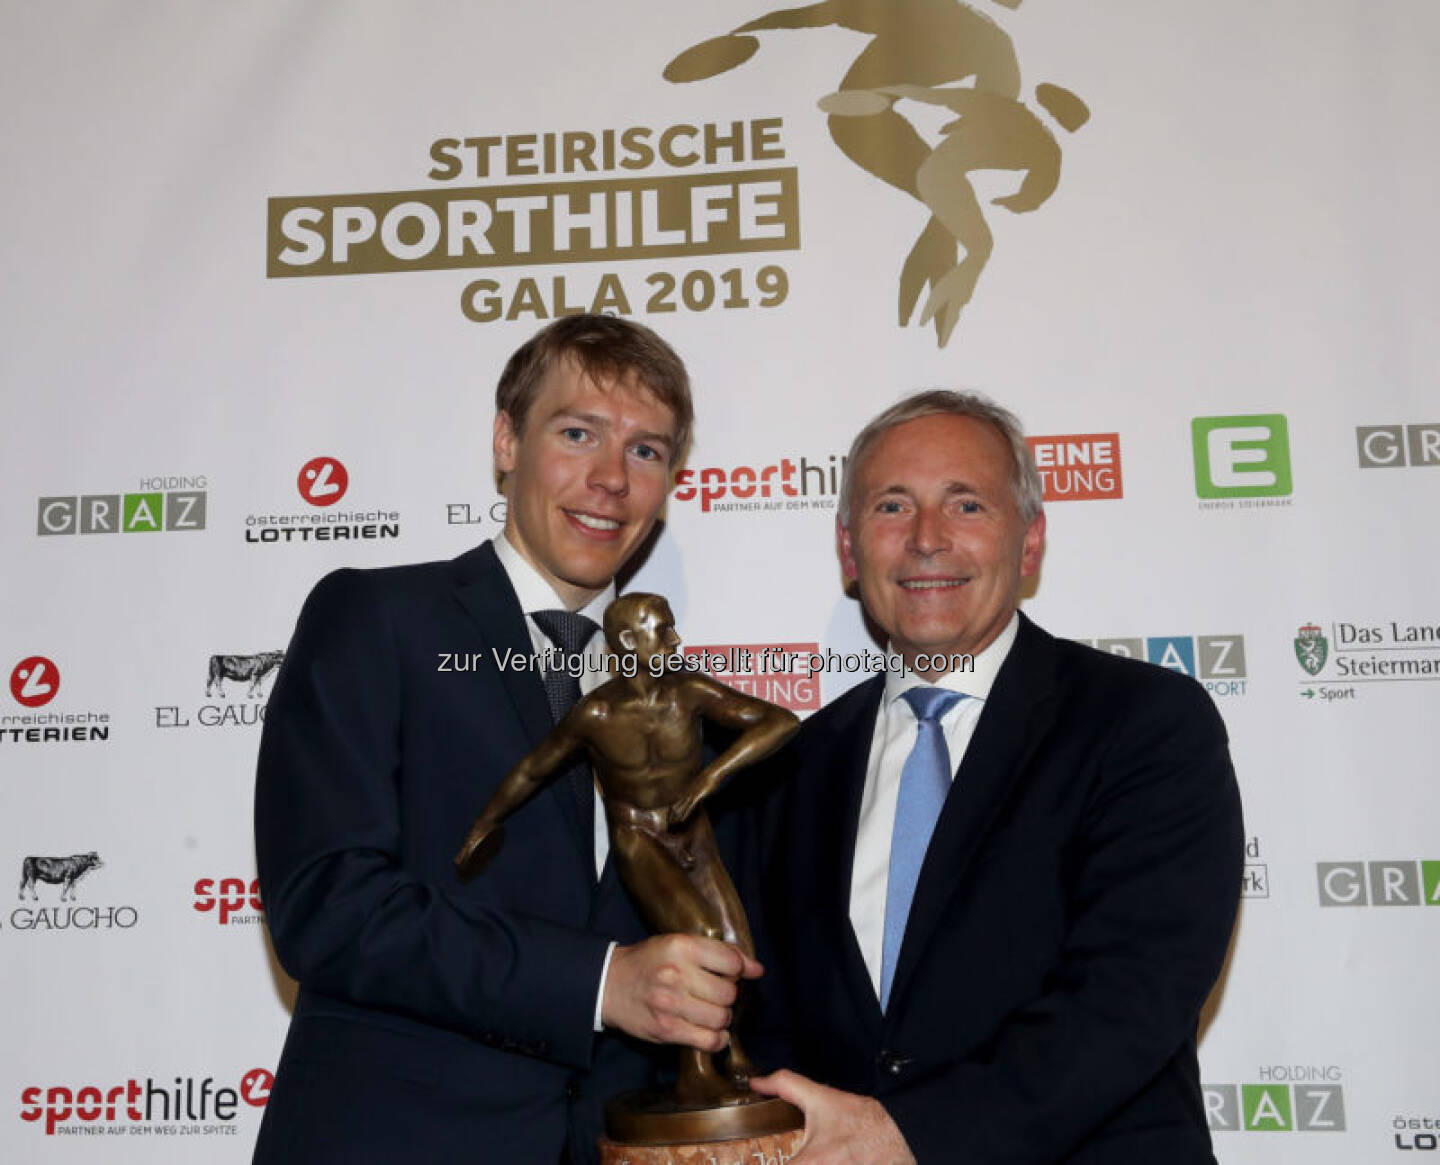 Steirische Sporthilfe Gala 2019 (Bild: Österreichische Sporthilfe)